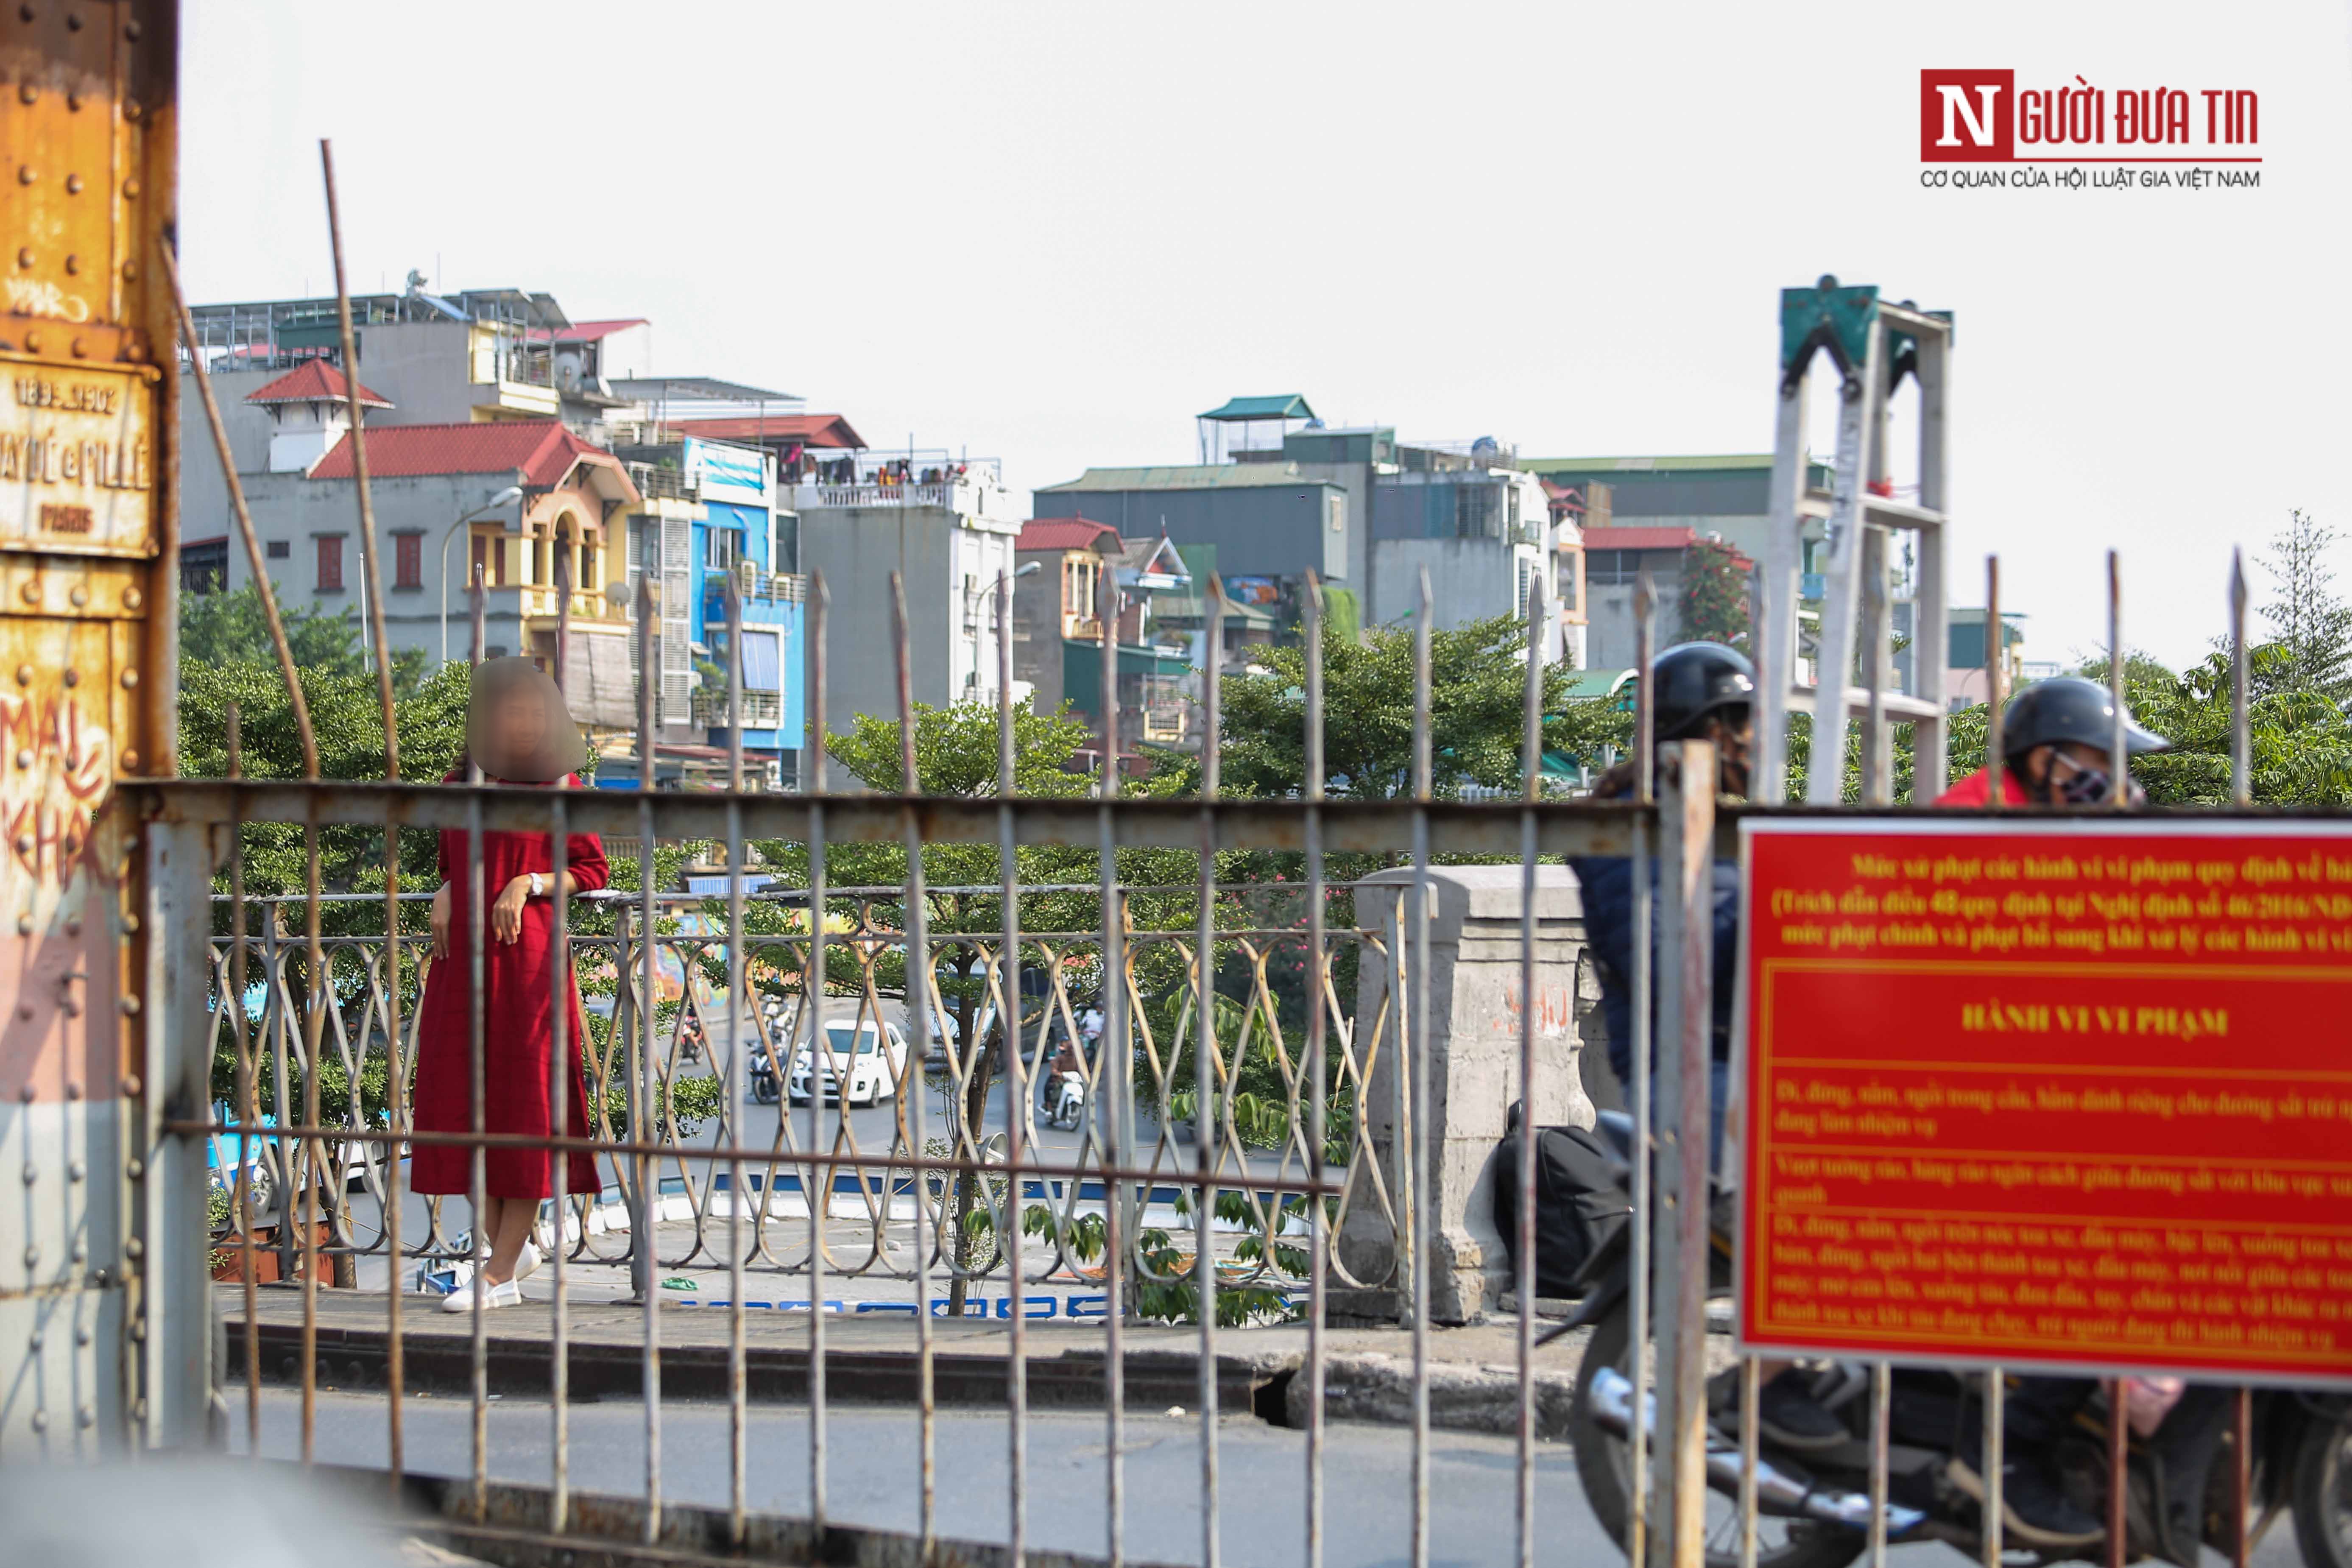 Tin nhanh - Bất chấp nguy hiểm, giới trẻ trèo sang đường tàu trên cầu Long Biên check in (Hình 4).